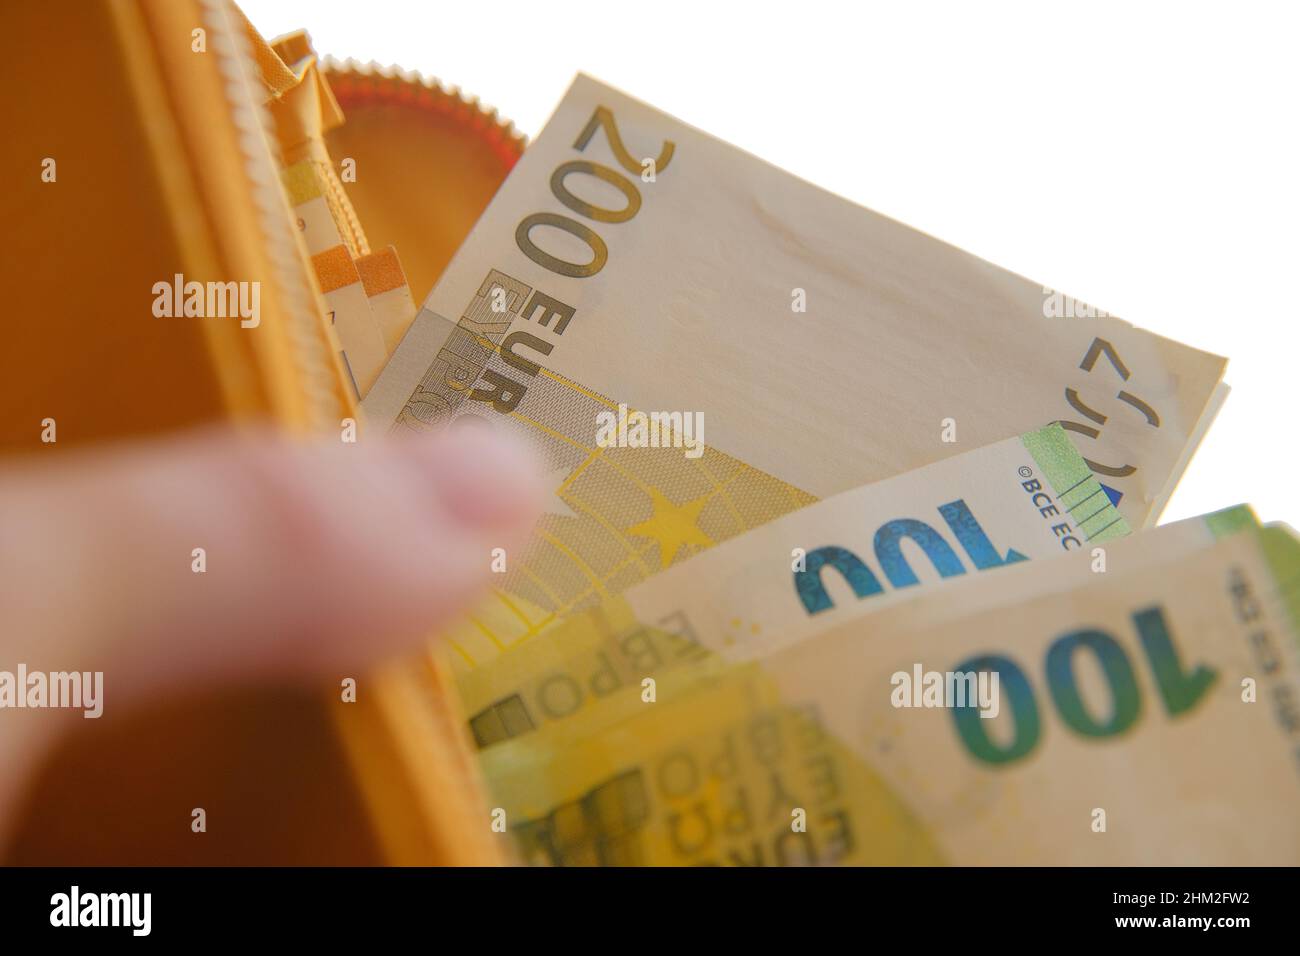 Portafoglio con valuta Money.Euro. Euro fattura in una borsa gialla in mani femminili su uno sfondo. Foto Stock